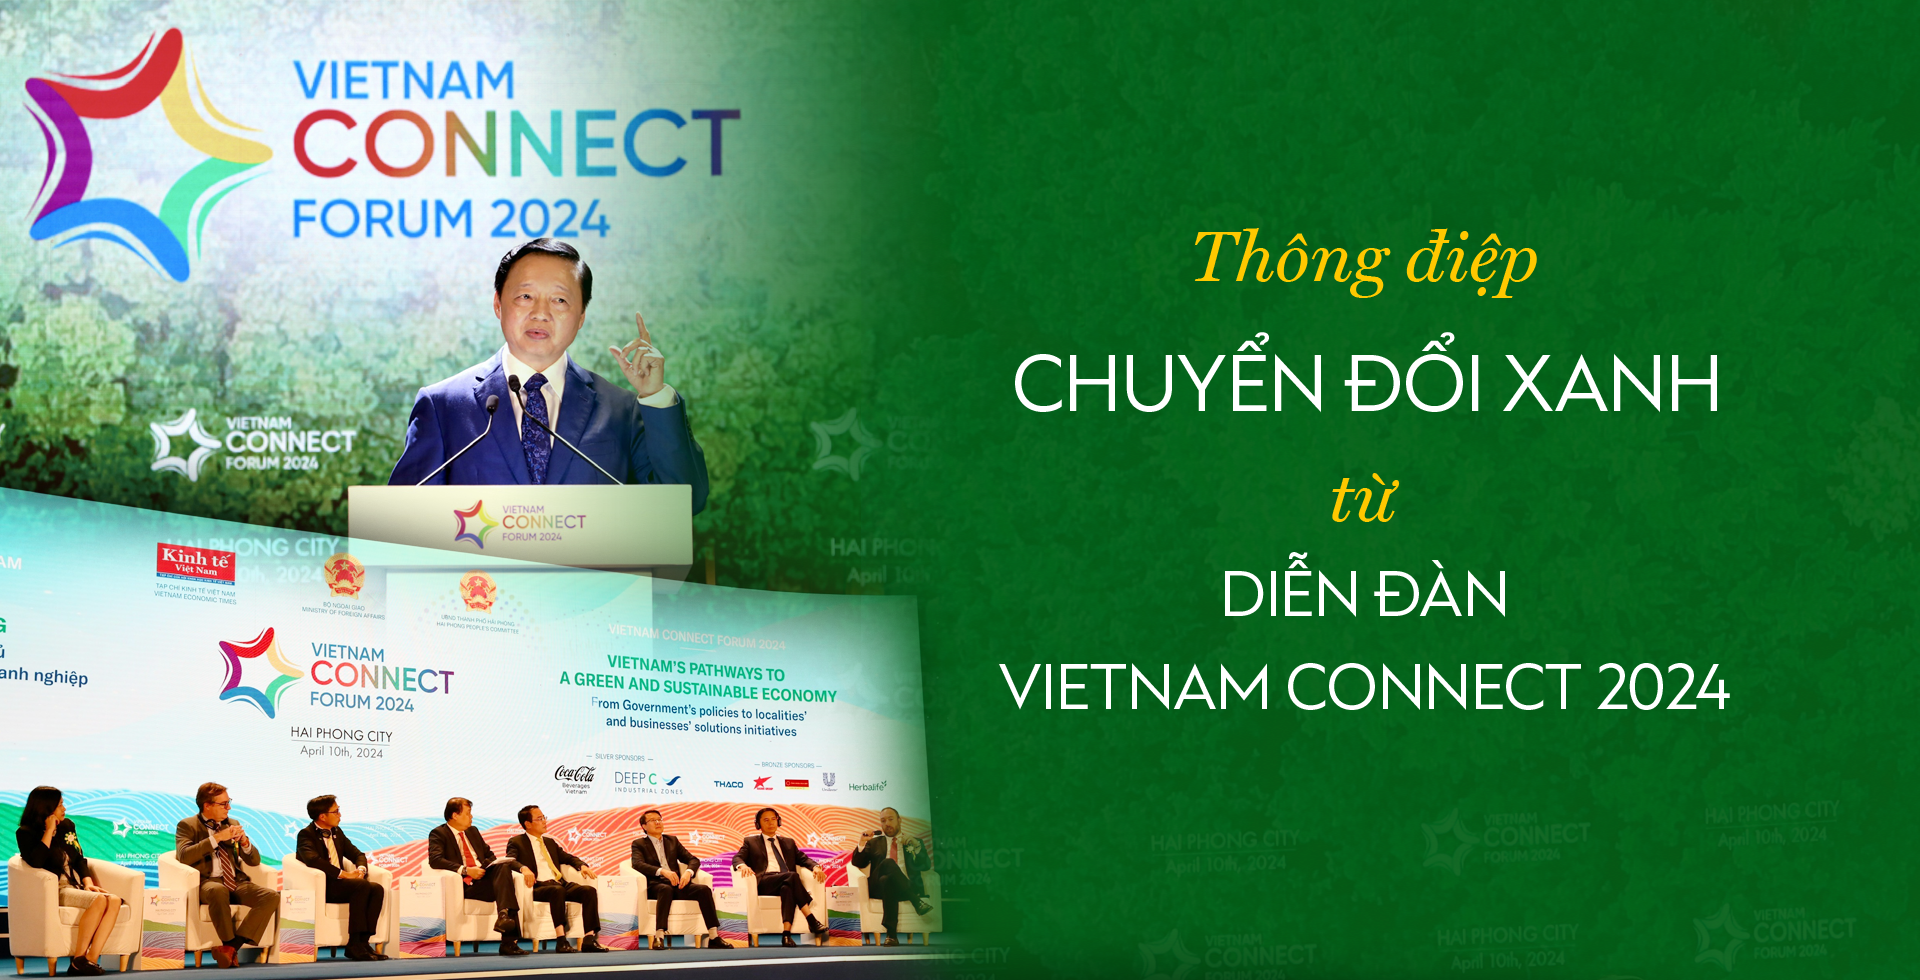 Thông điệp chuyển đổi xanh từ Diễn đàn Vietnam Connect 2024 - Ảnh 1